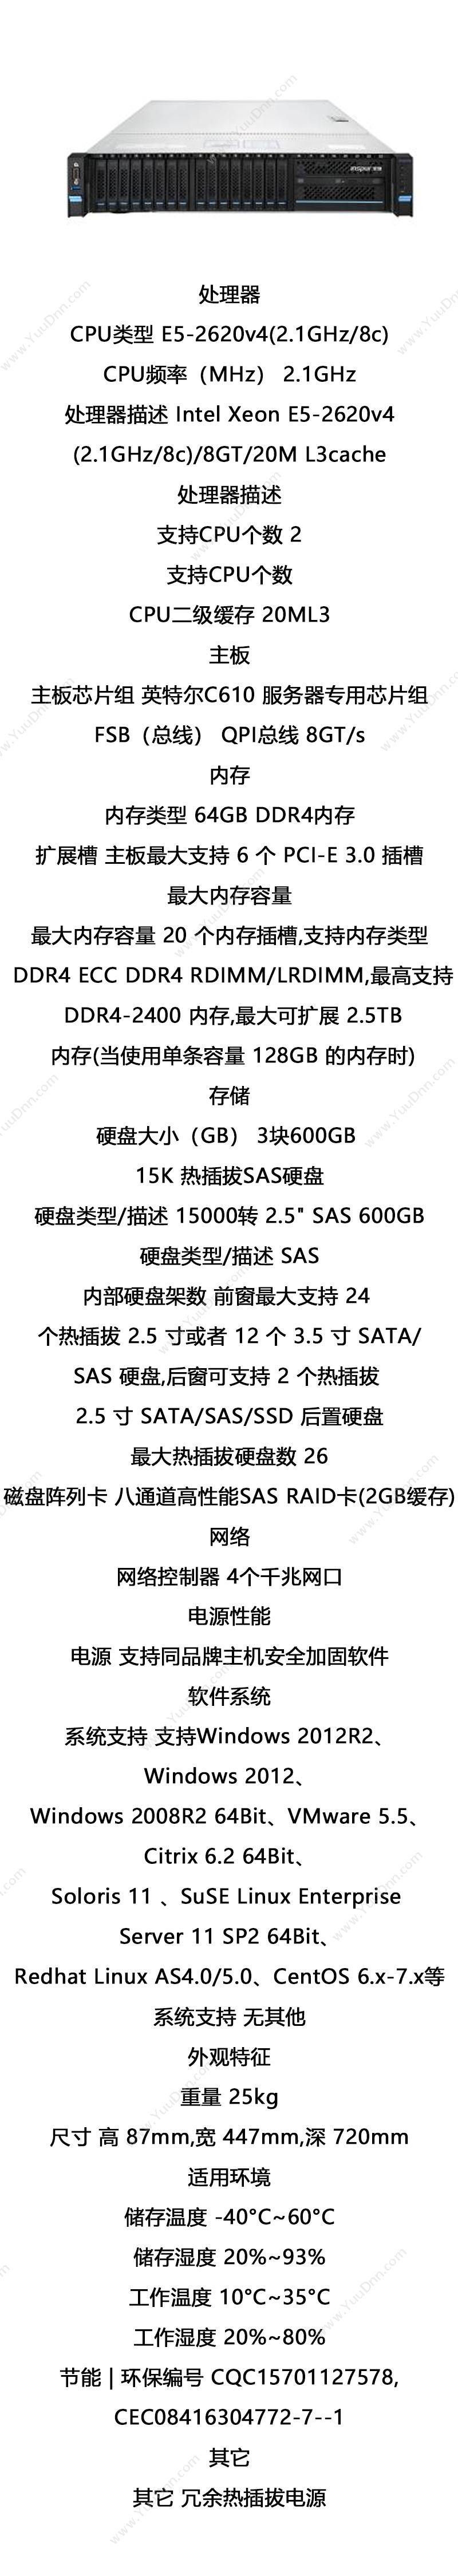 浪潮 Inspur NF5270M4（E5-2620v4*2/16G RDIMM DDR4 内存*4/600G 热插拔SAS硬盘(1万5千转） 2.5*3） 服务器 高 87mm,宽 447mm,深 720mm 塔式服务器